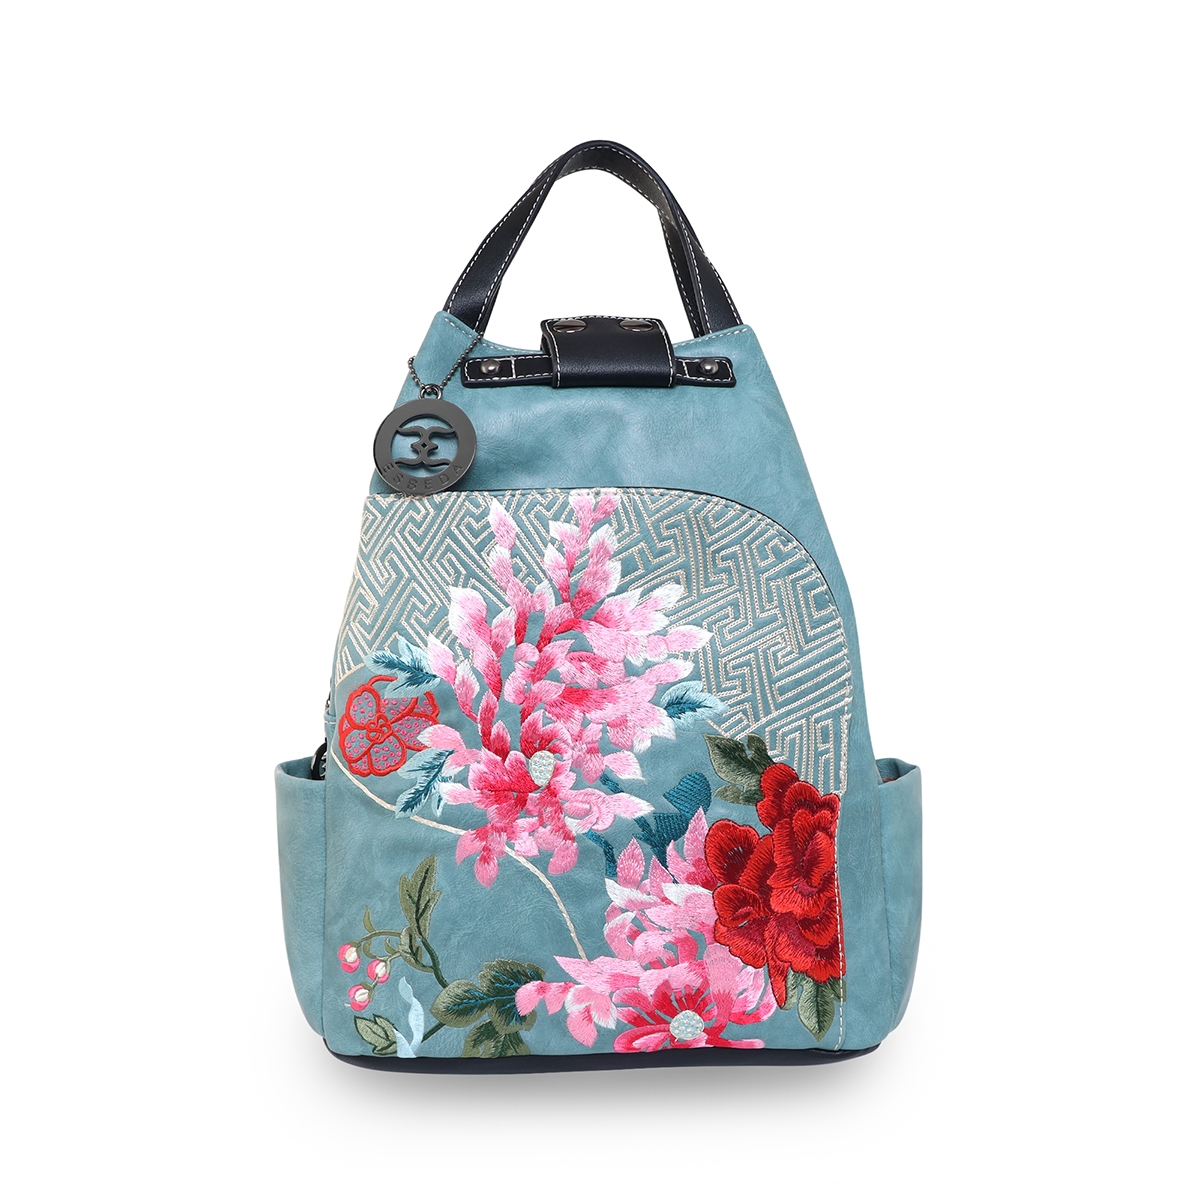 Kensie Backpack Purse Pink Floral | eBay